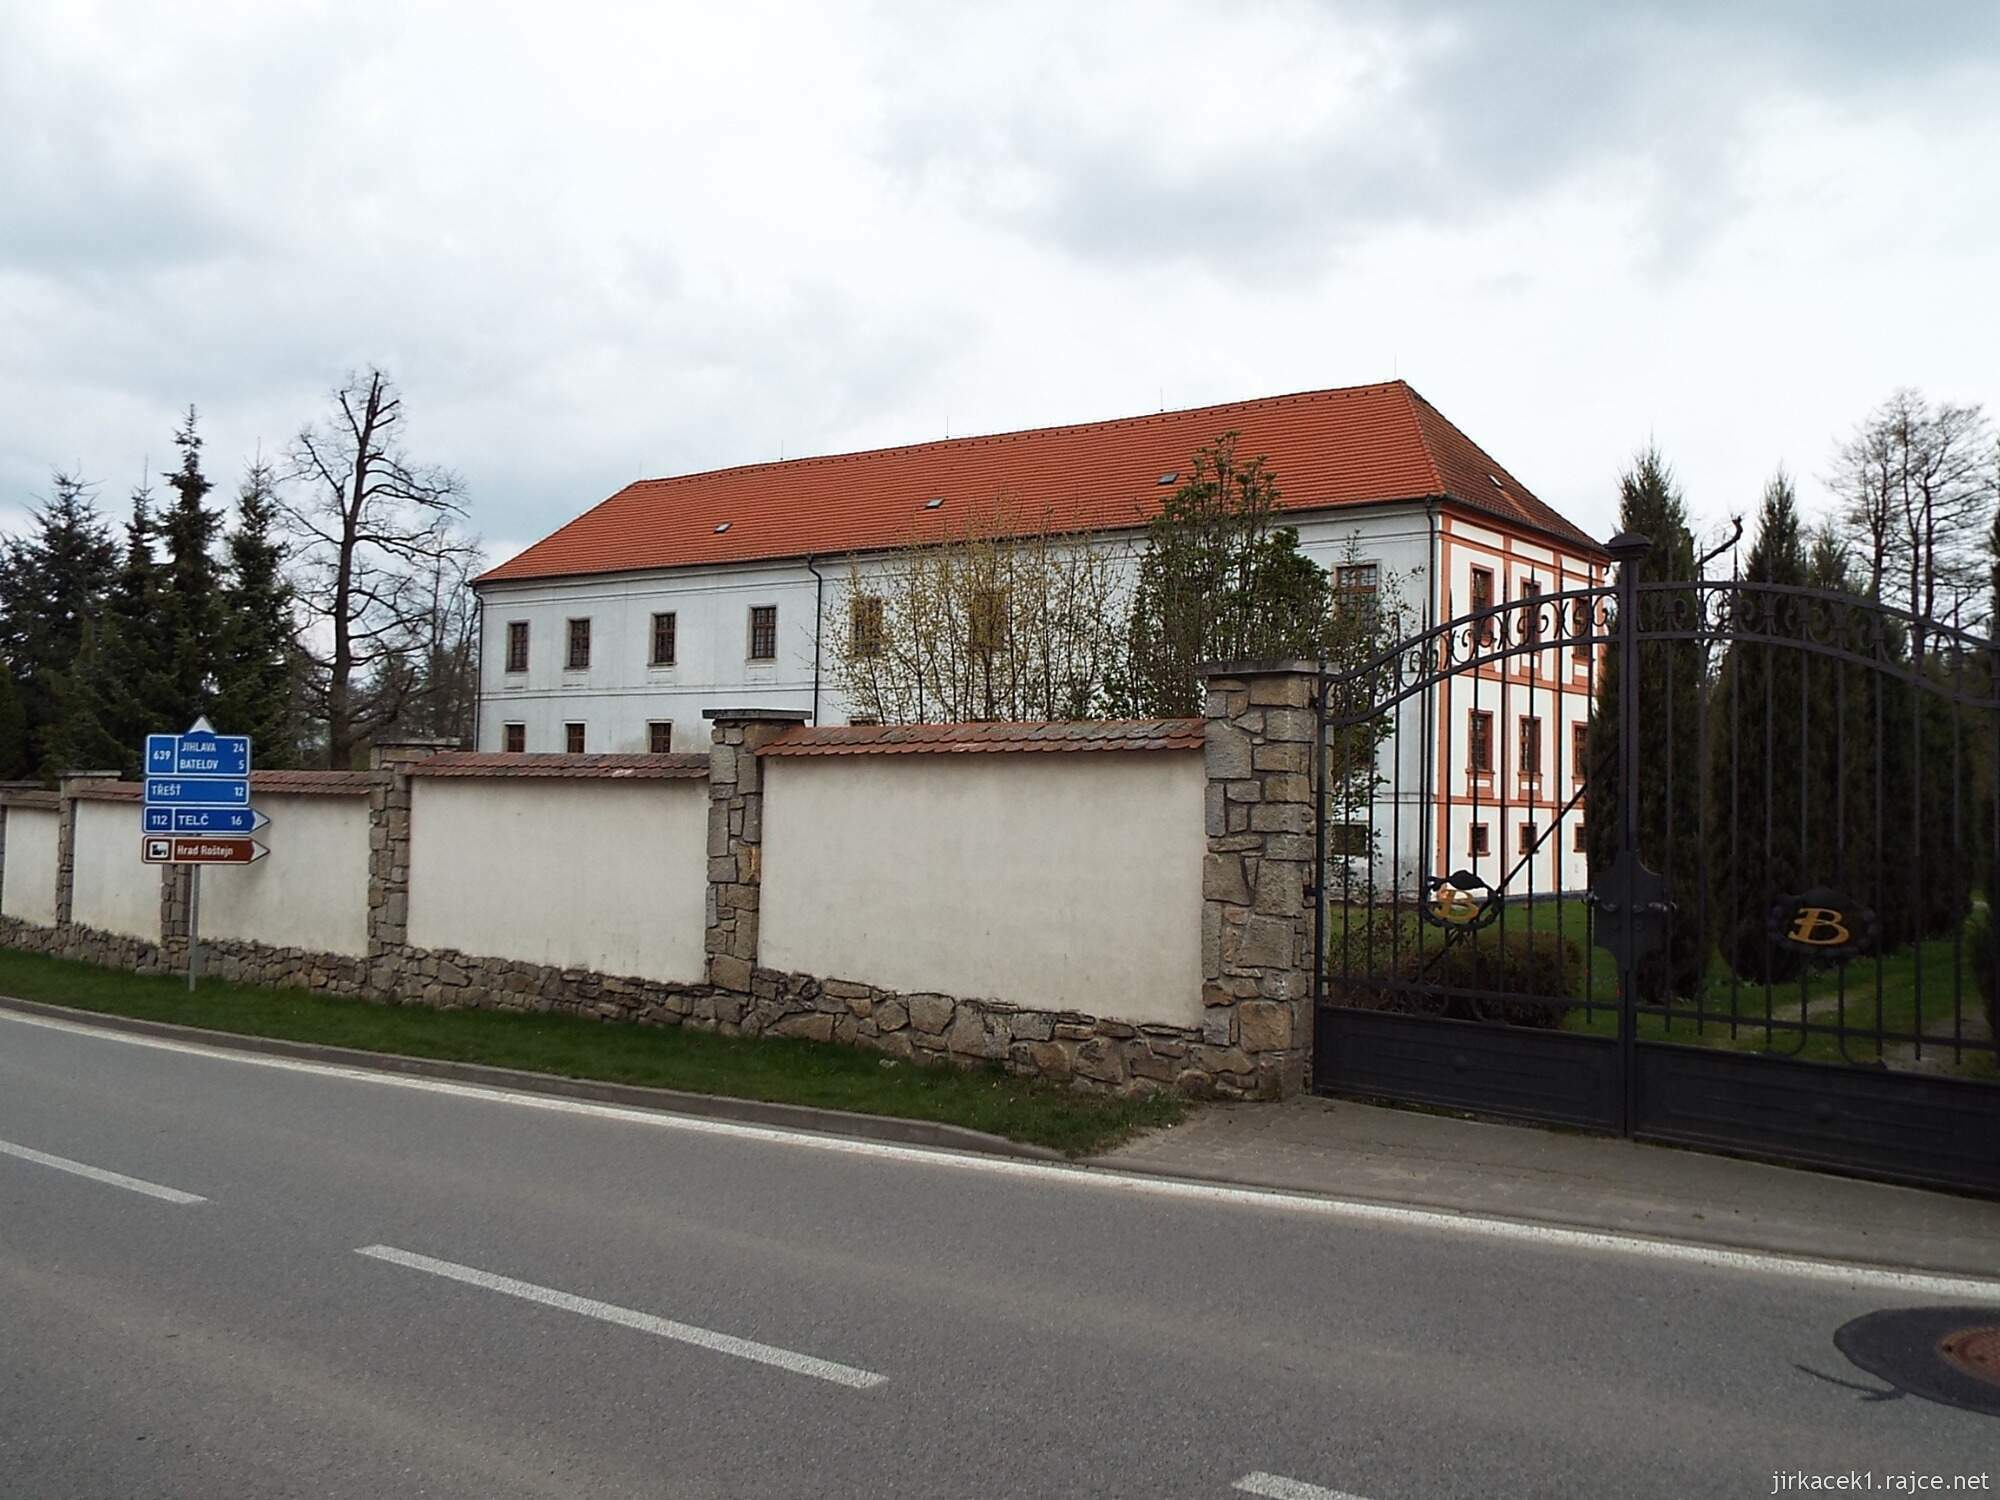 O - Horní Cerekev - zámek 05 - hlavní budova zámku